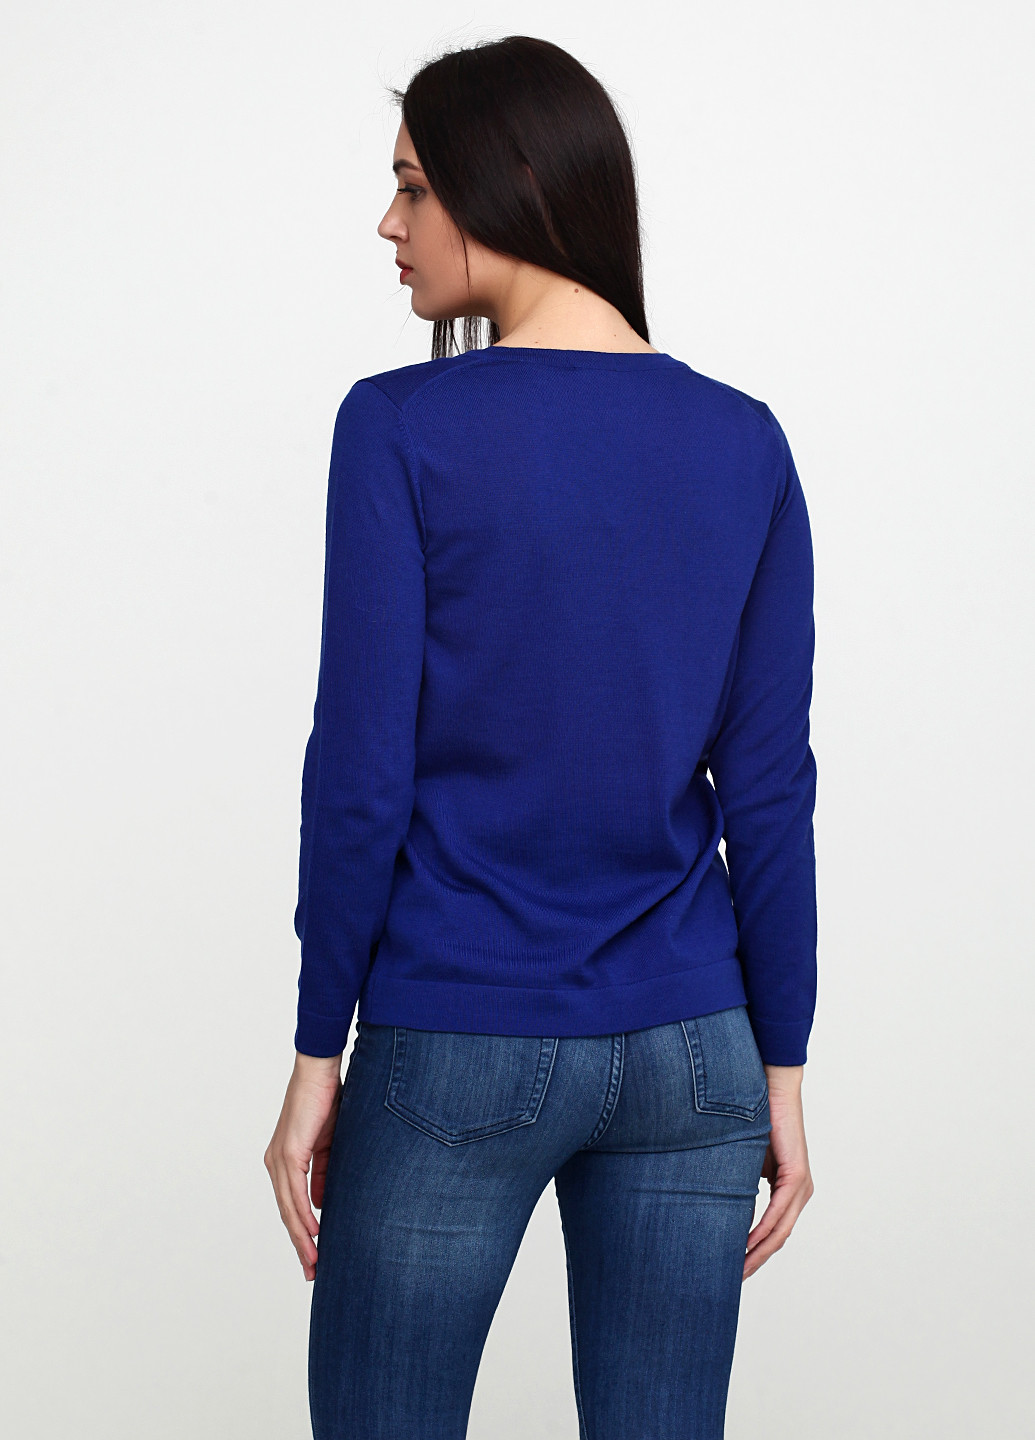 Синий демисезонный пуловер пуловер Gant